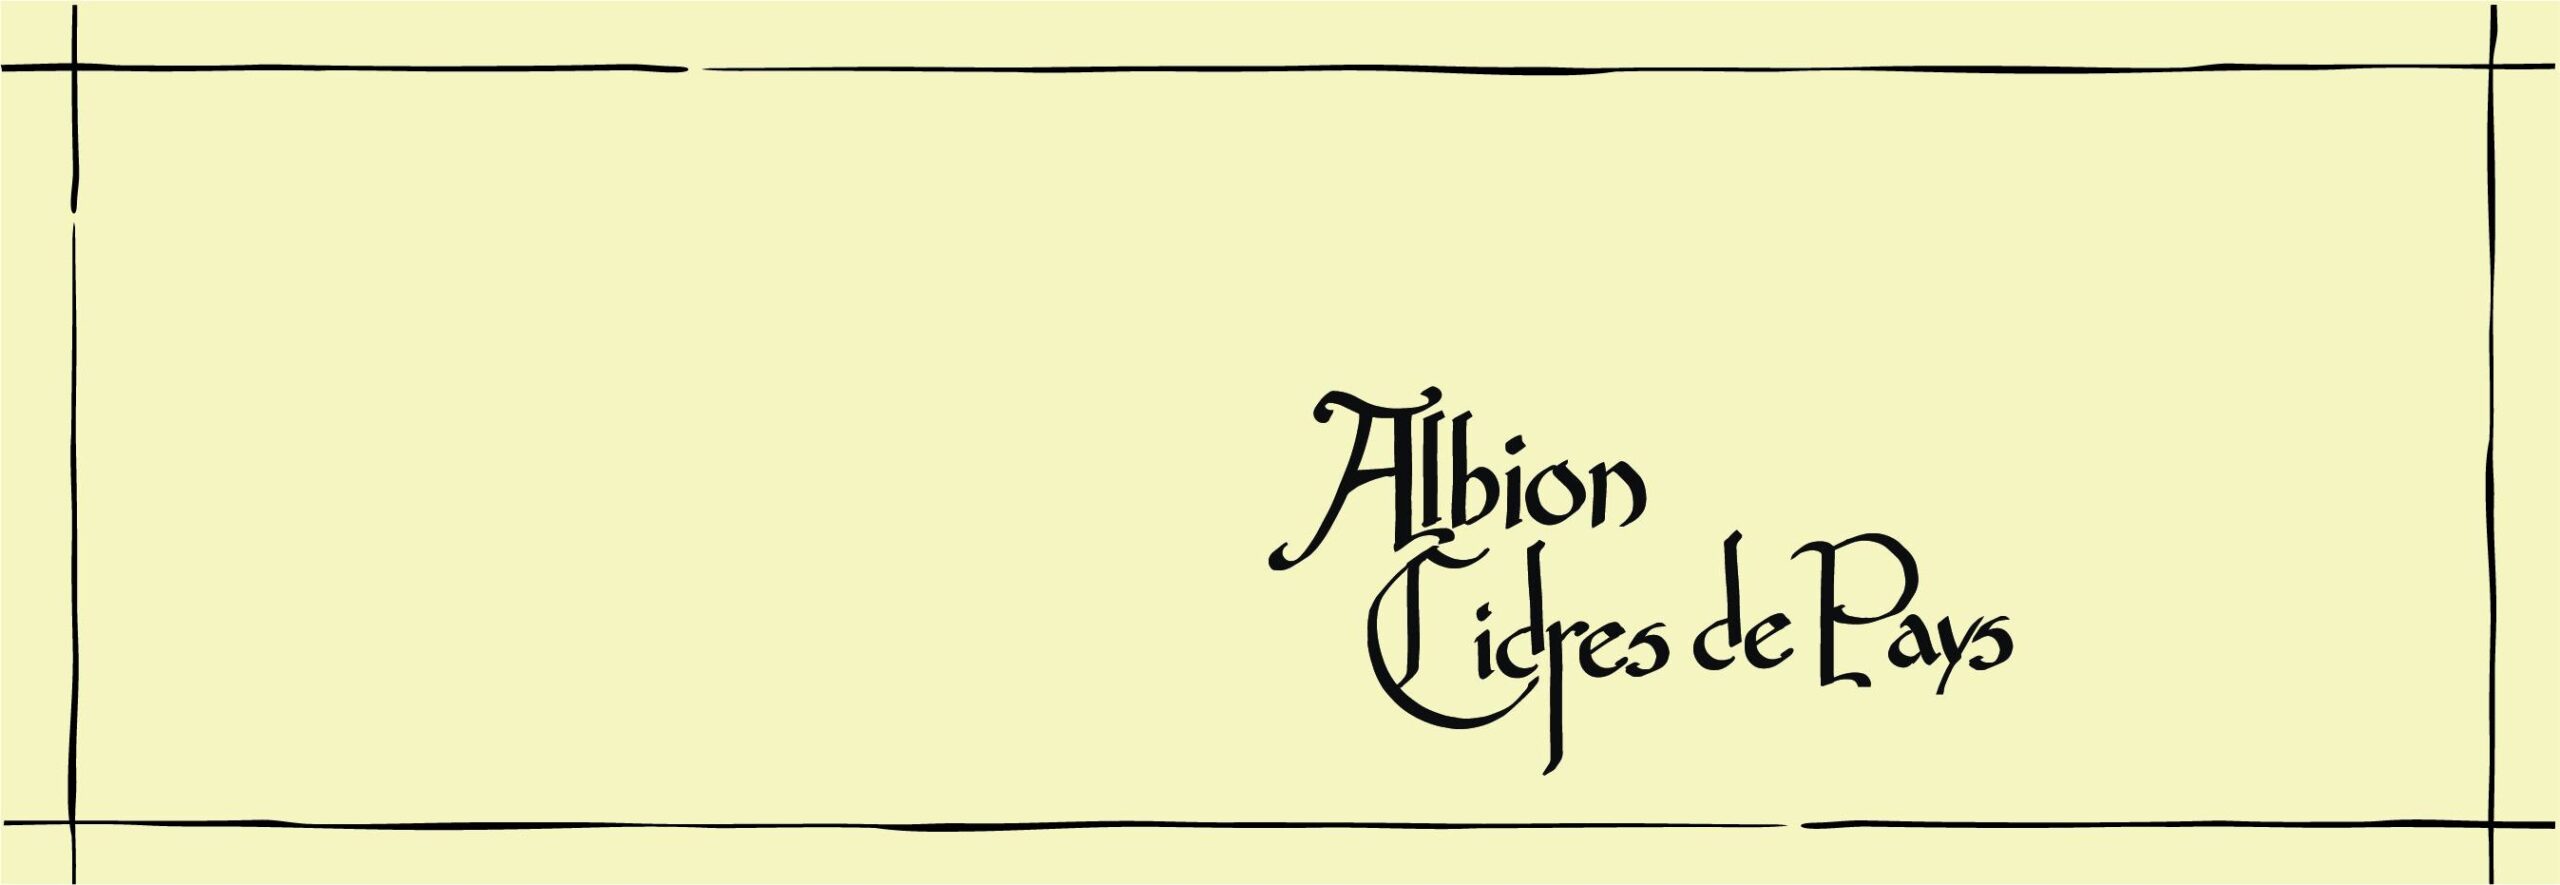 Albion - Cidres de Pays